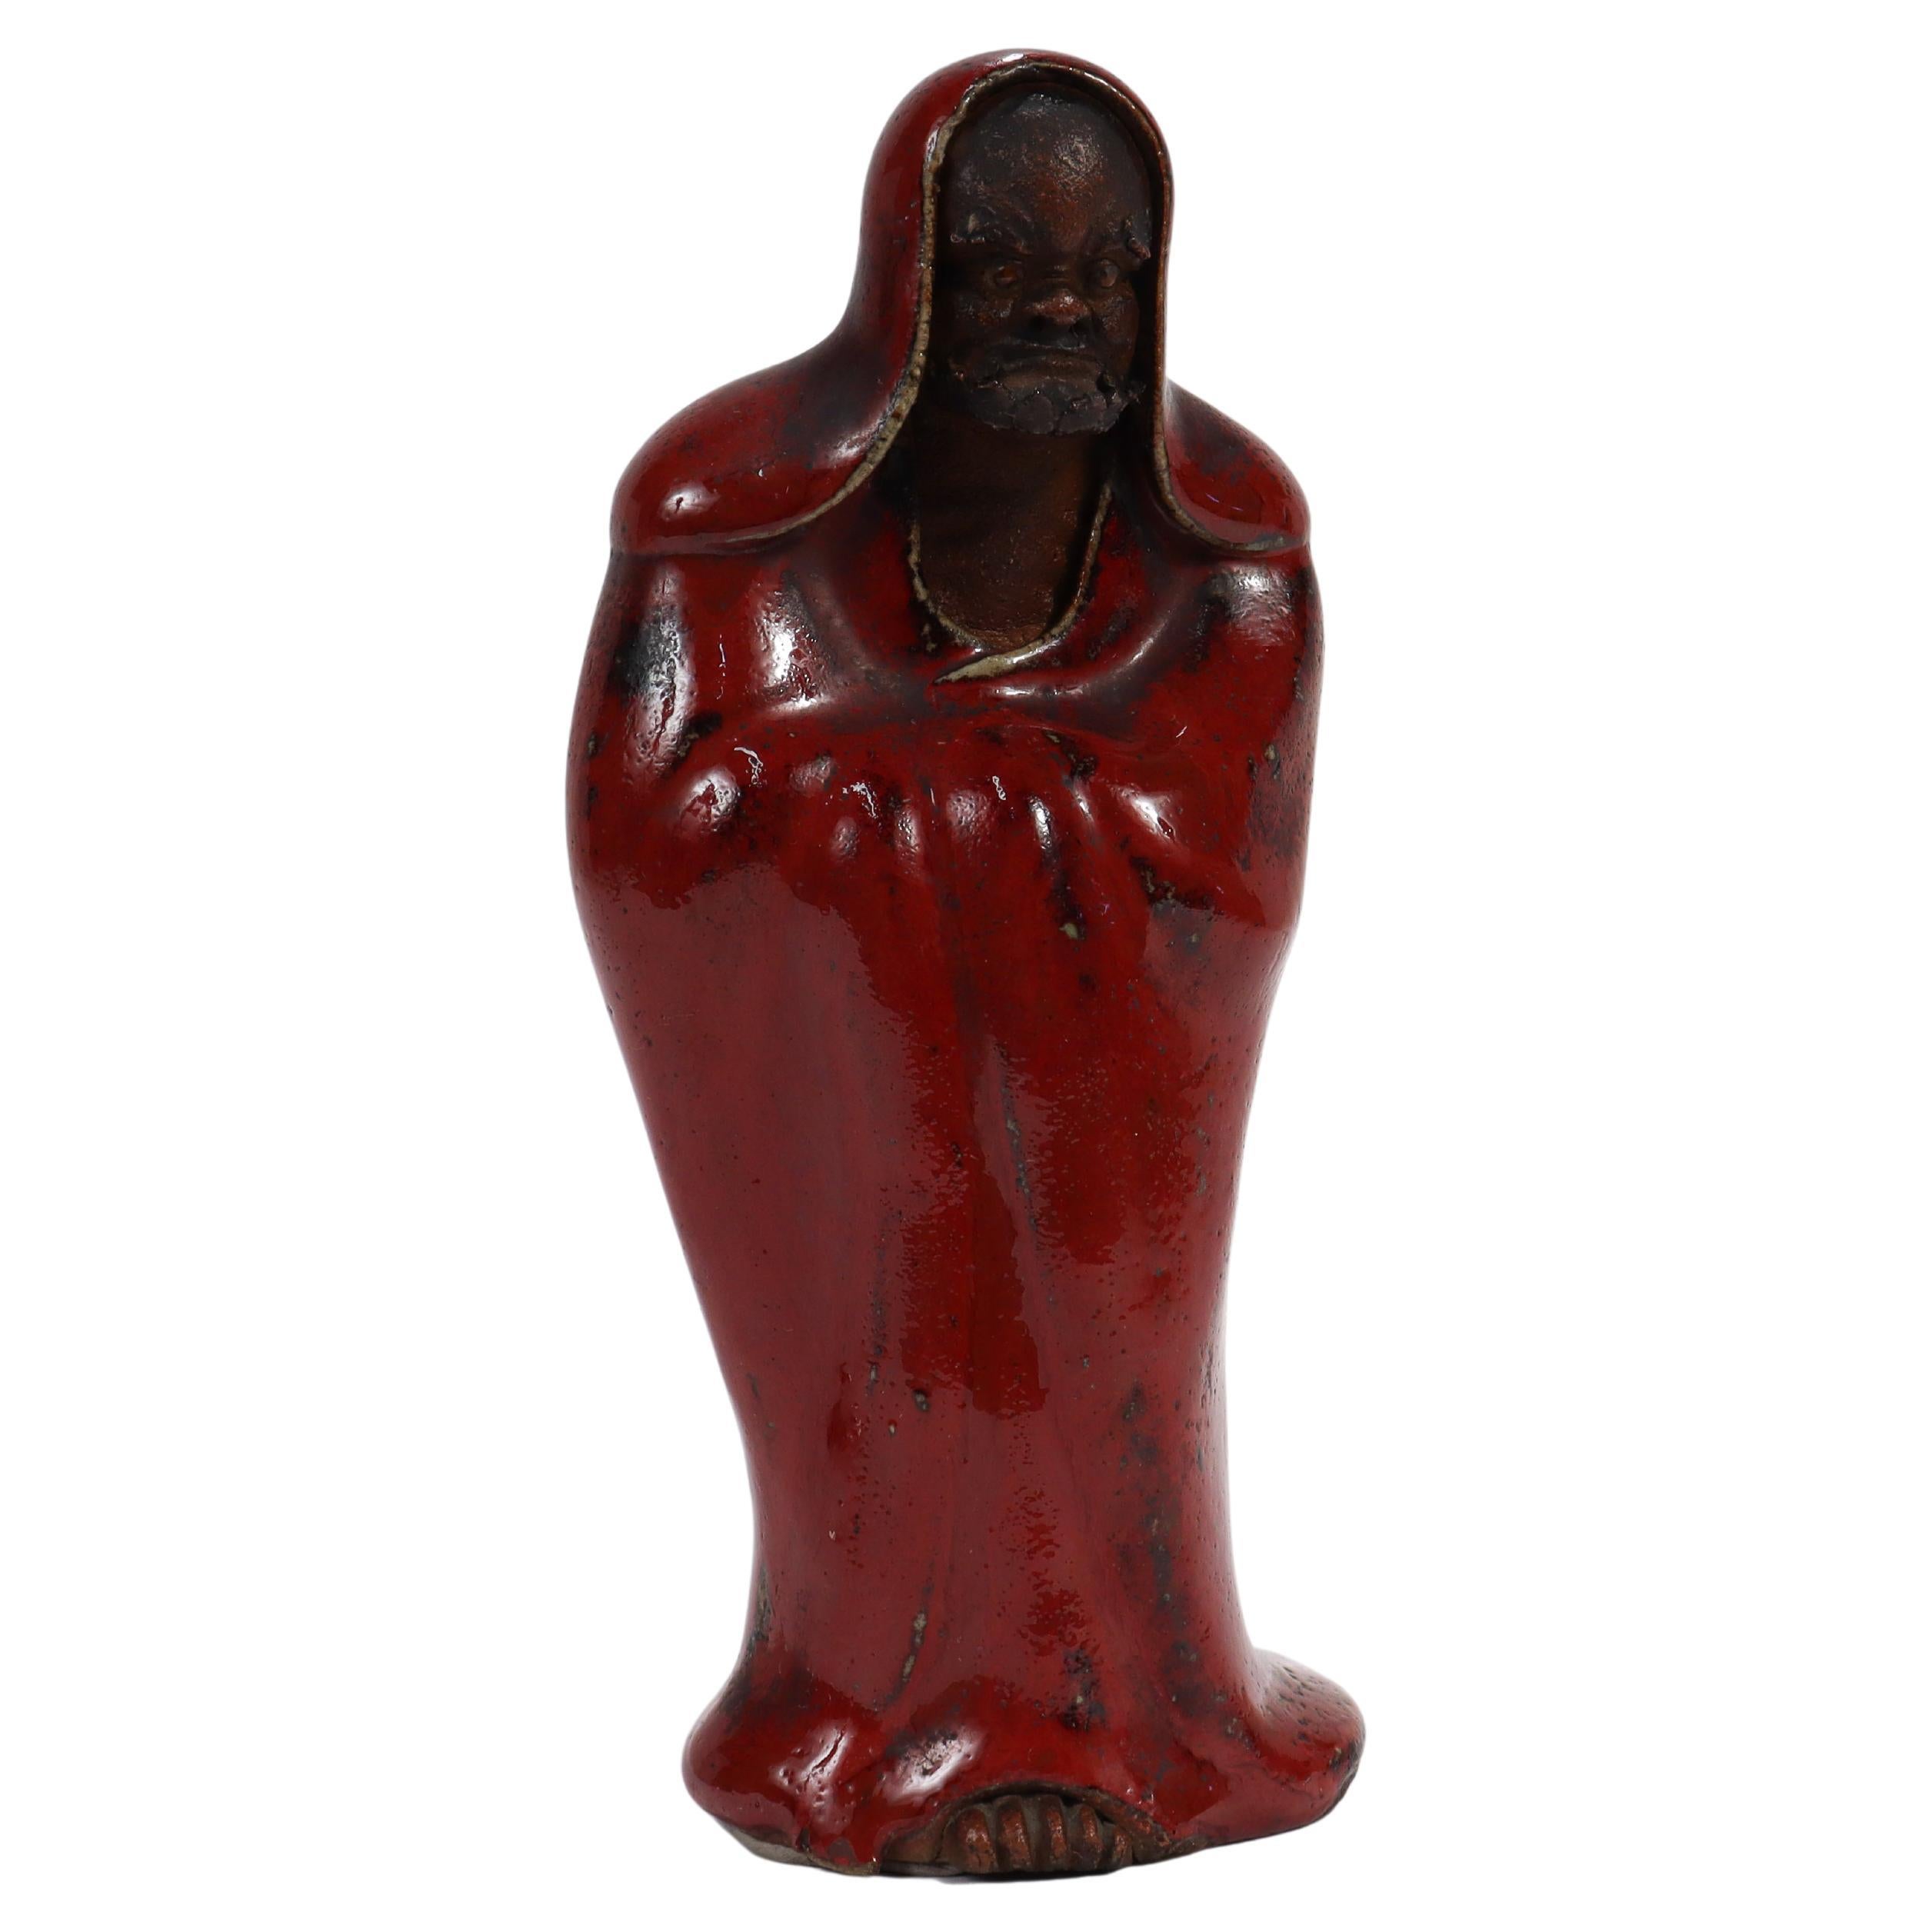 Figurine Daruma en poterie japonaise ancienne.

Sous la forme d'un Daruma, une représentation de Bodhidharma, le fondateur semi-légendaire du bouddhisme Zen/A-CHAN.

Le visage et les orteils saillants du personnage sont d'un brun foncé non émaillé